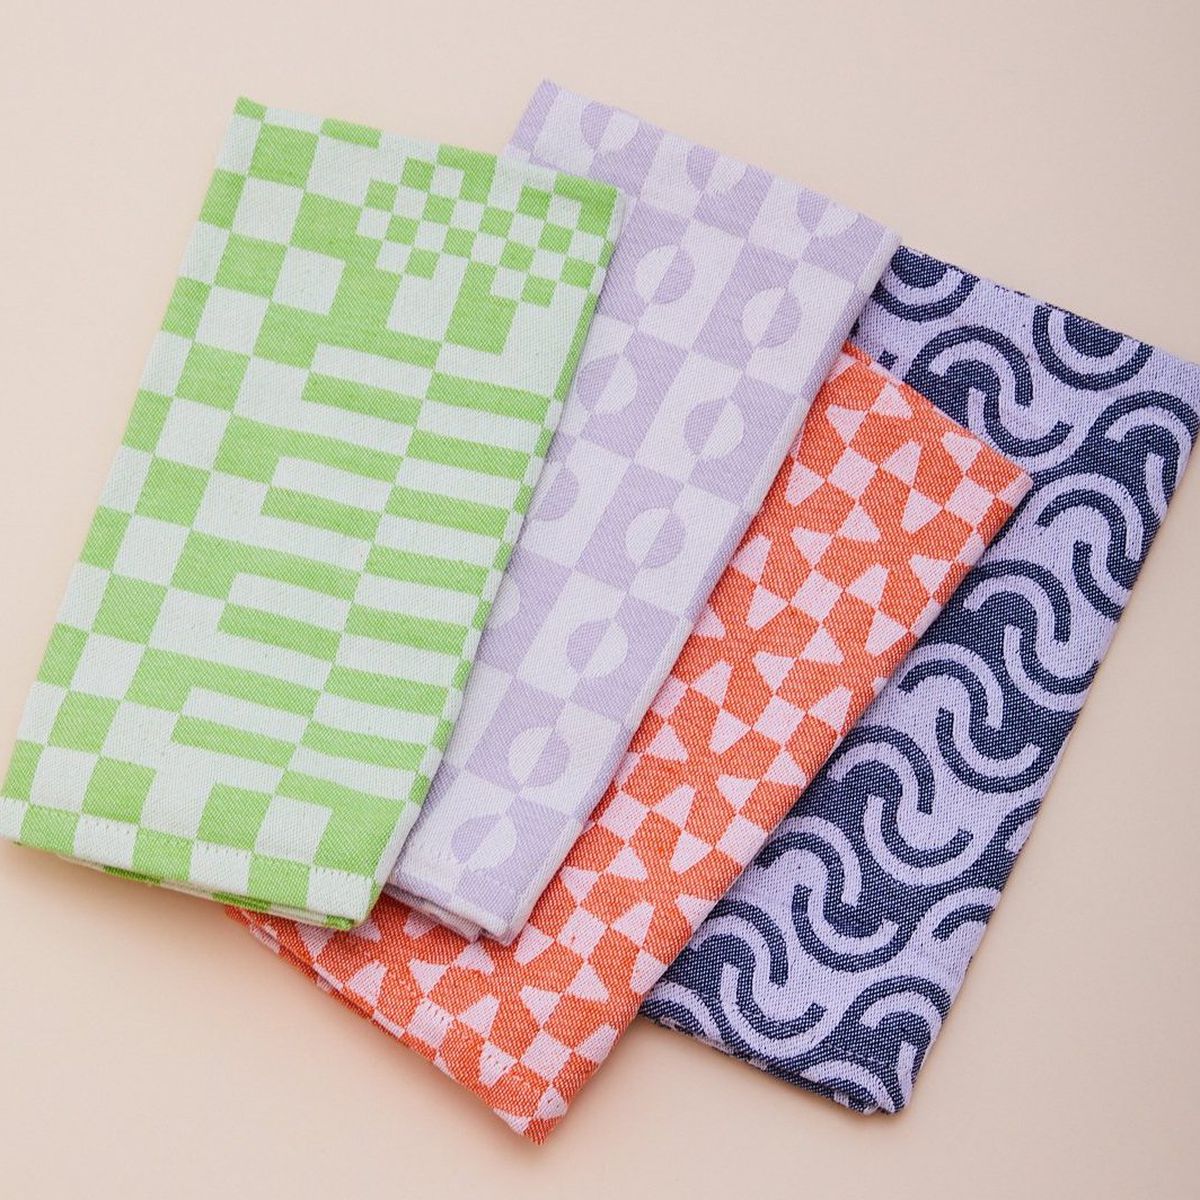 Set of four patterned napkins.